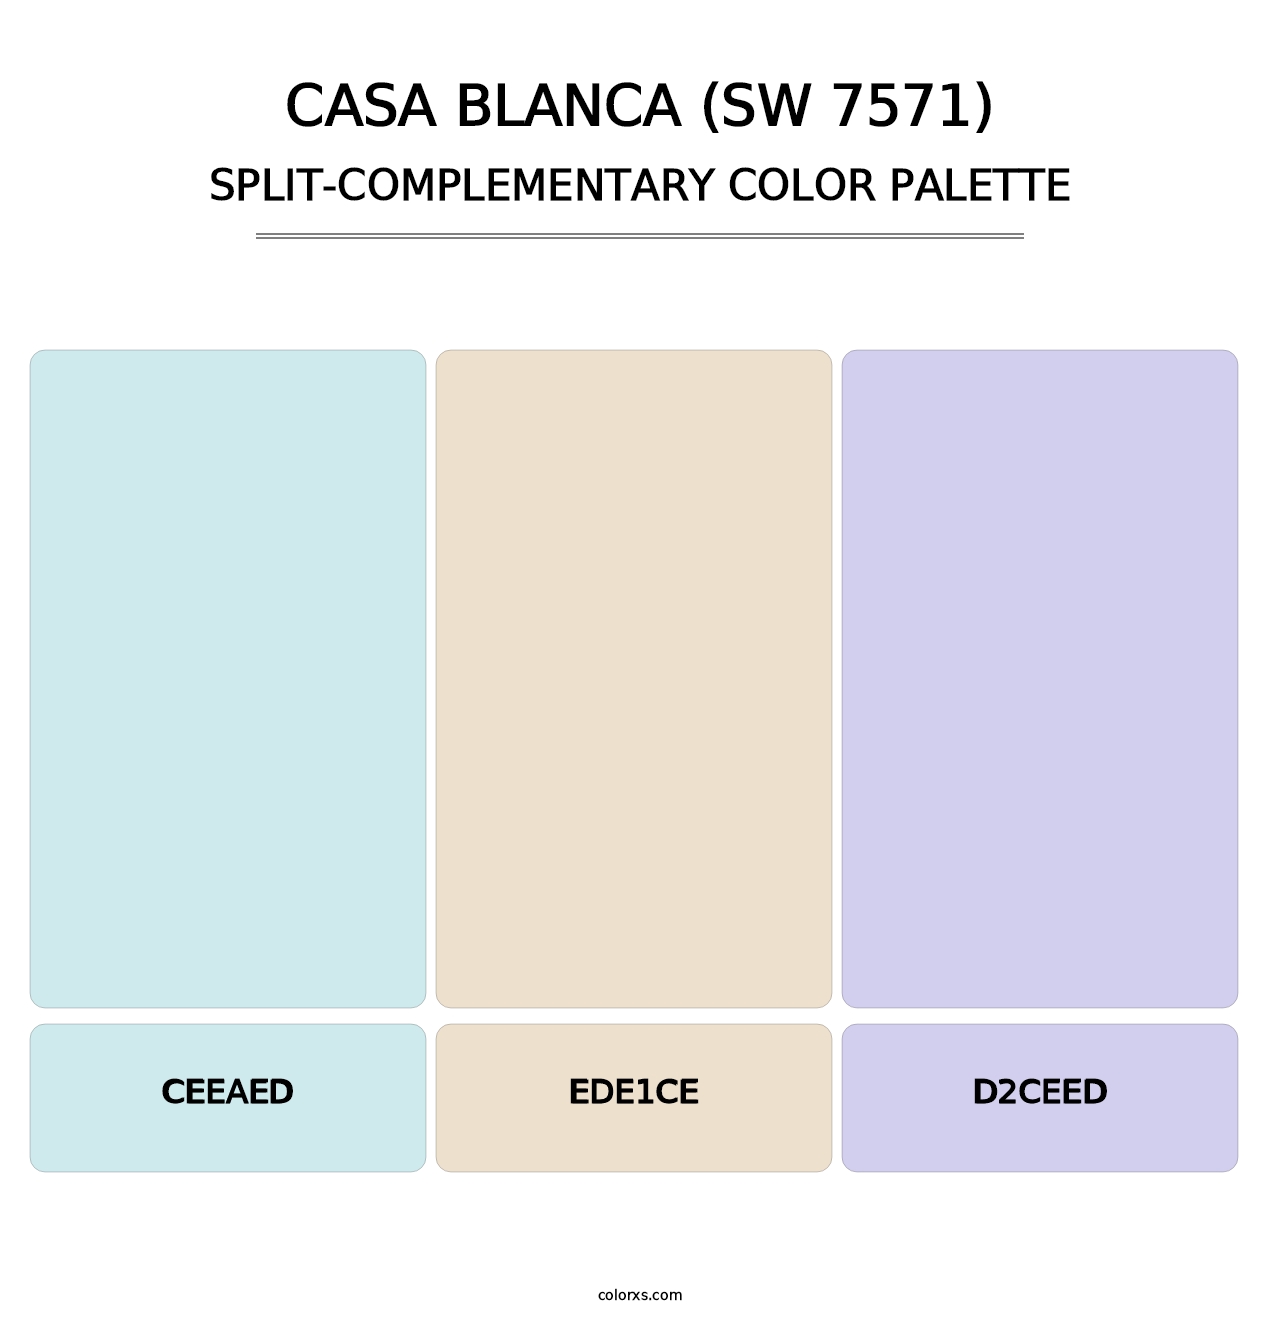 Casa Blanca (SW 7571) - Split-Complementary Color Palette